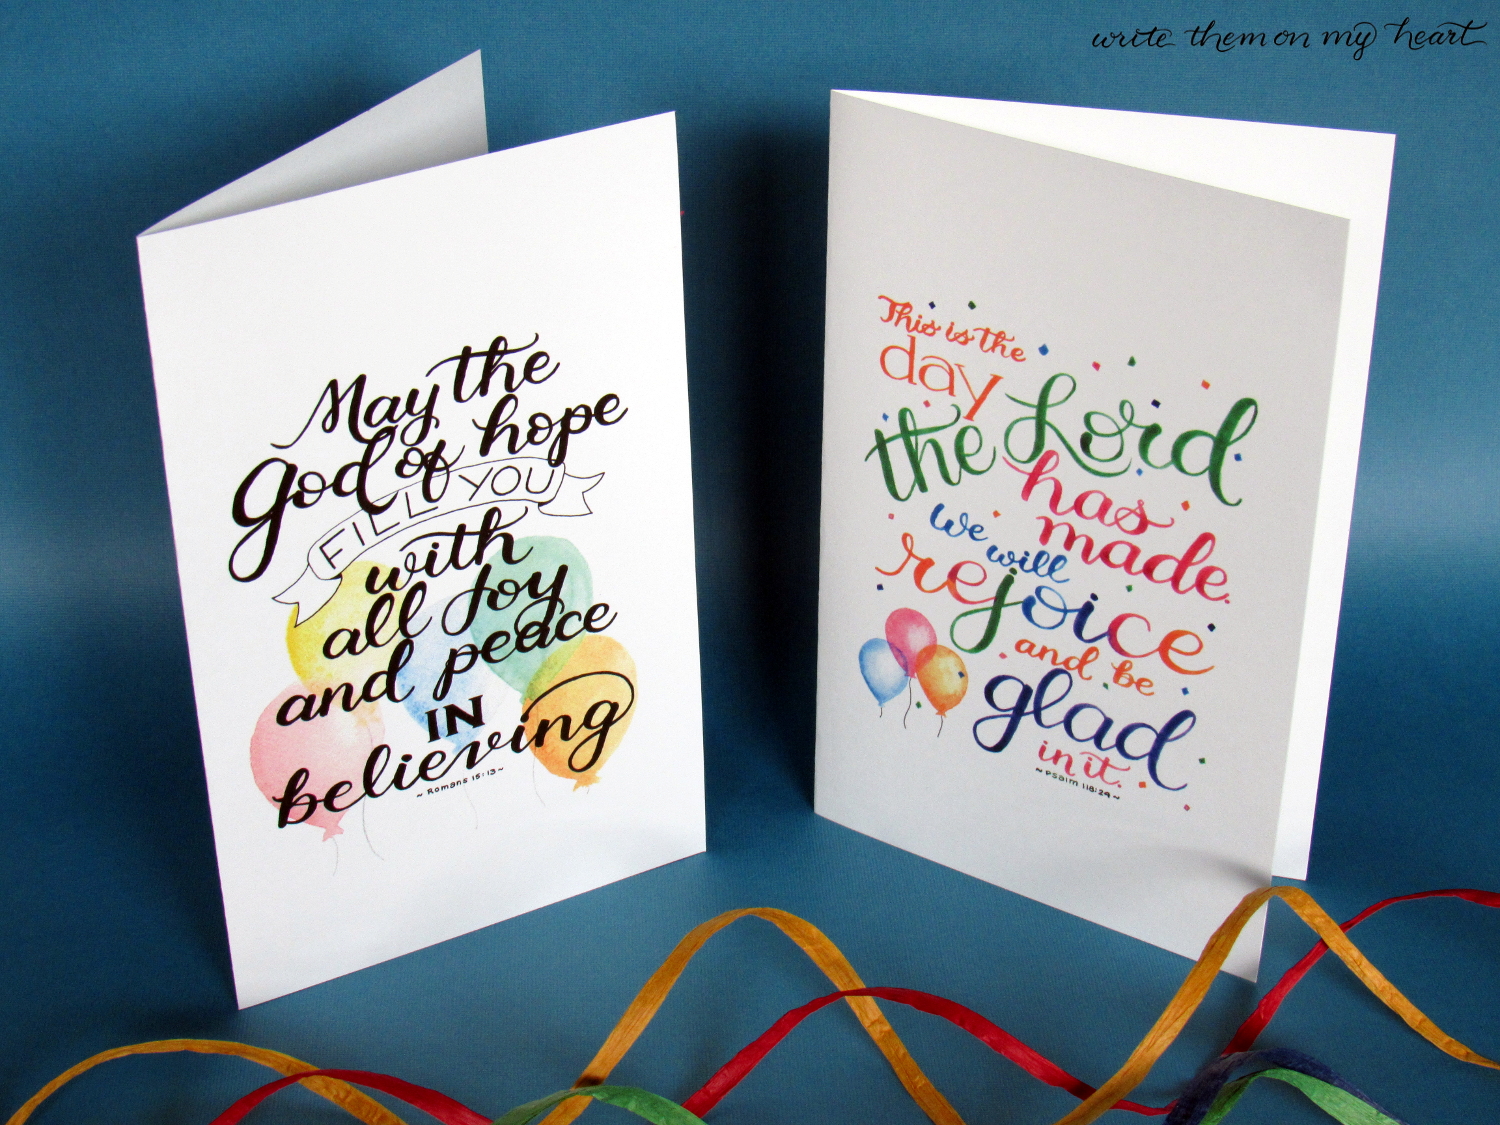 Christian Birthday Cards Free Printable Printable Templates